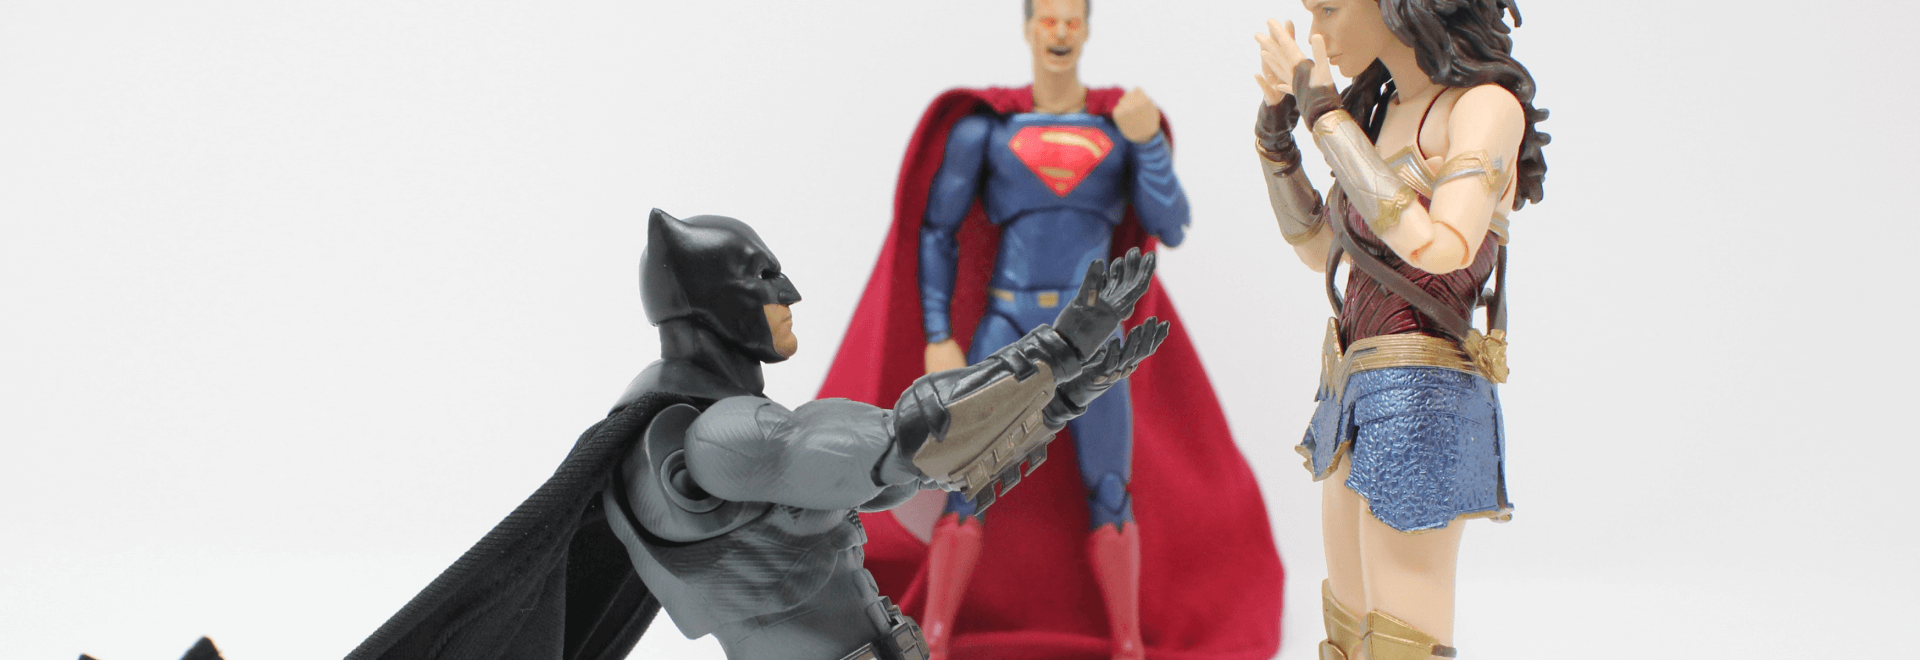 Liga de la Justicia de Zack Snyder y la expectativa entre las audiencias